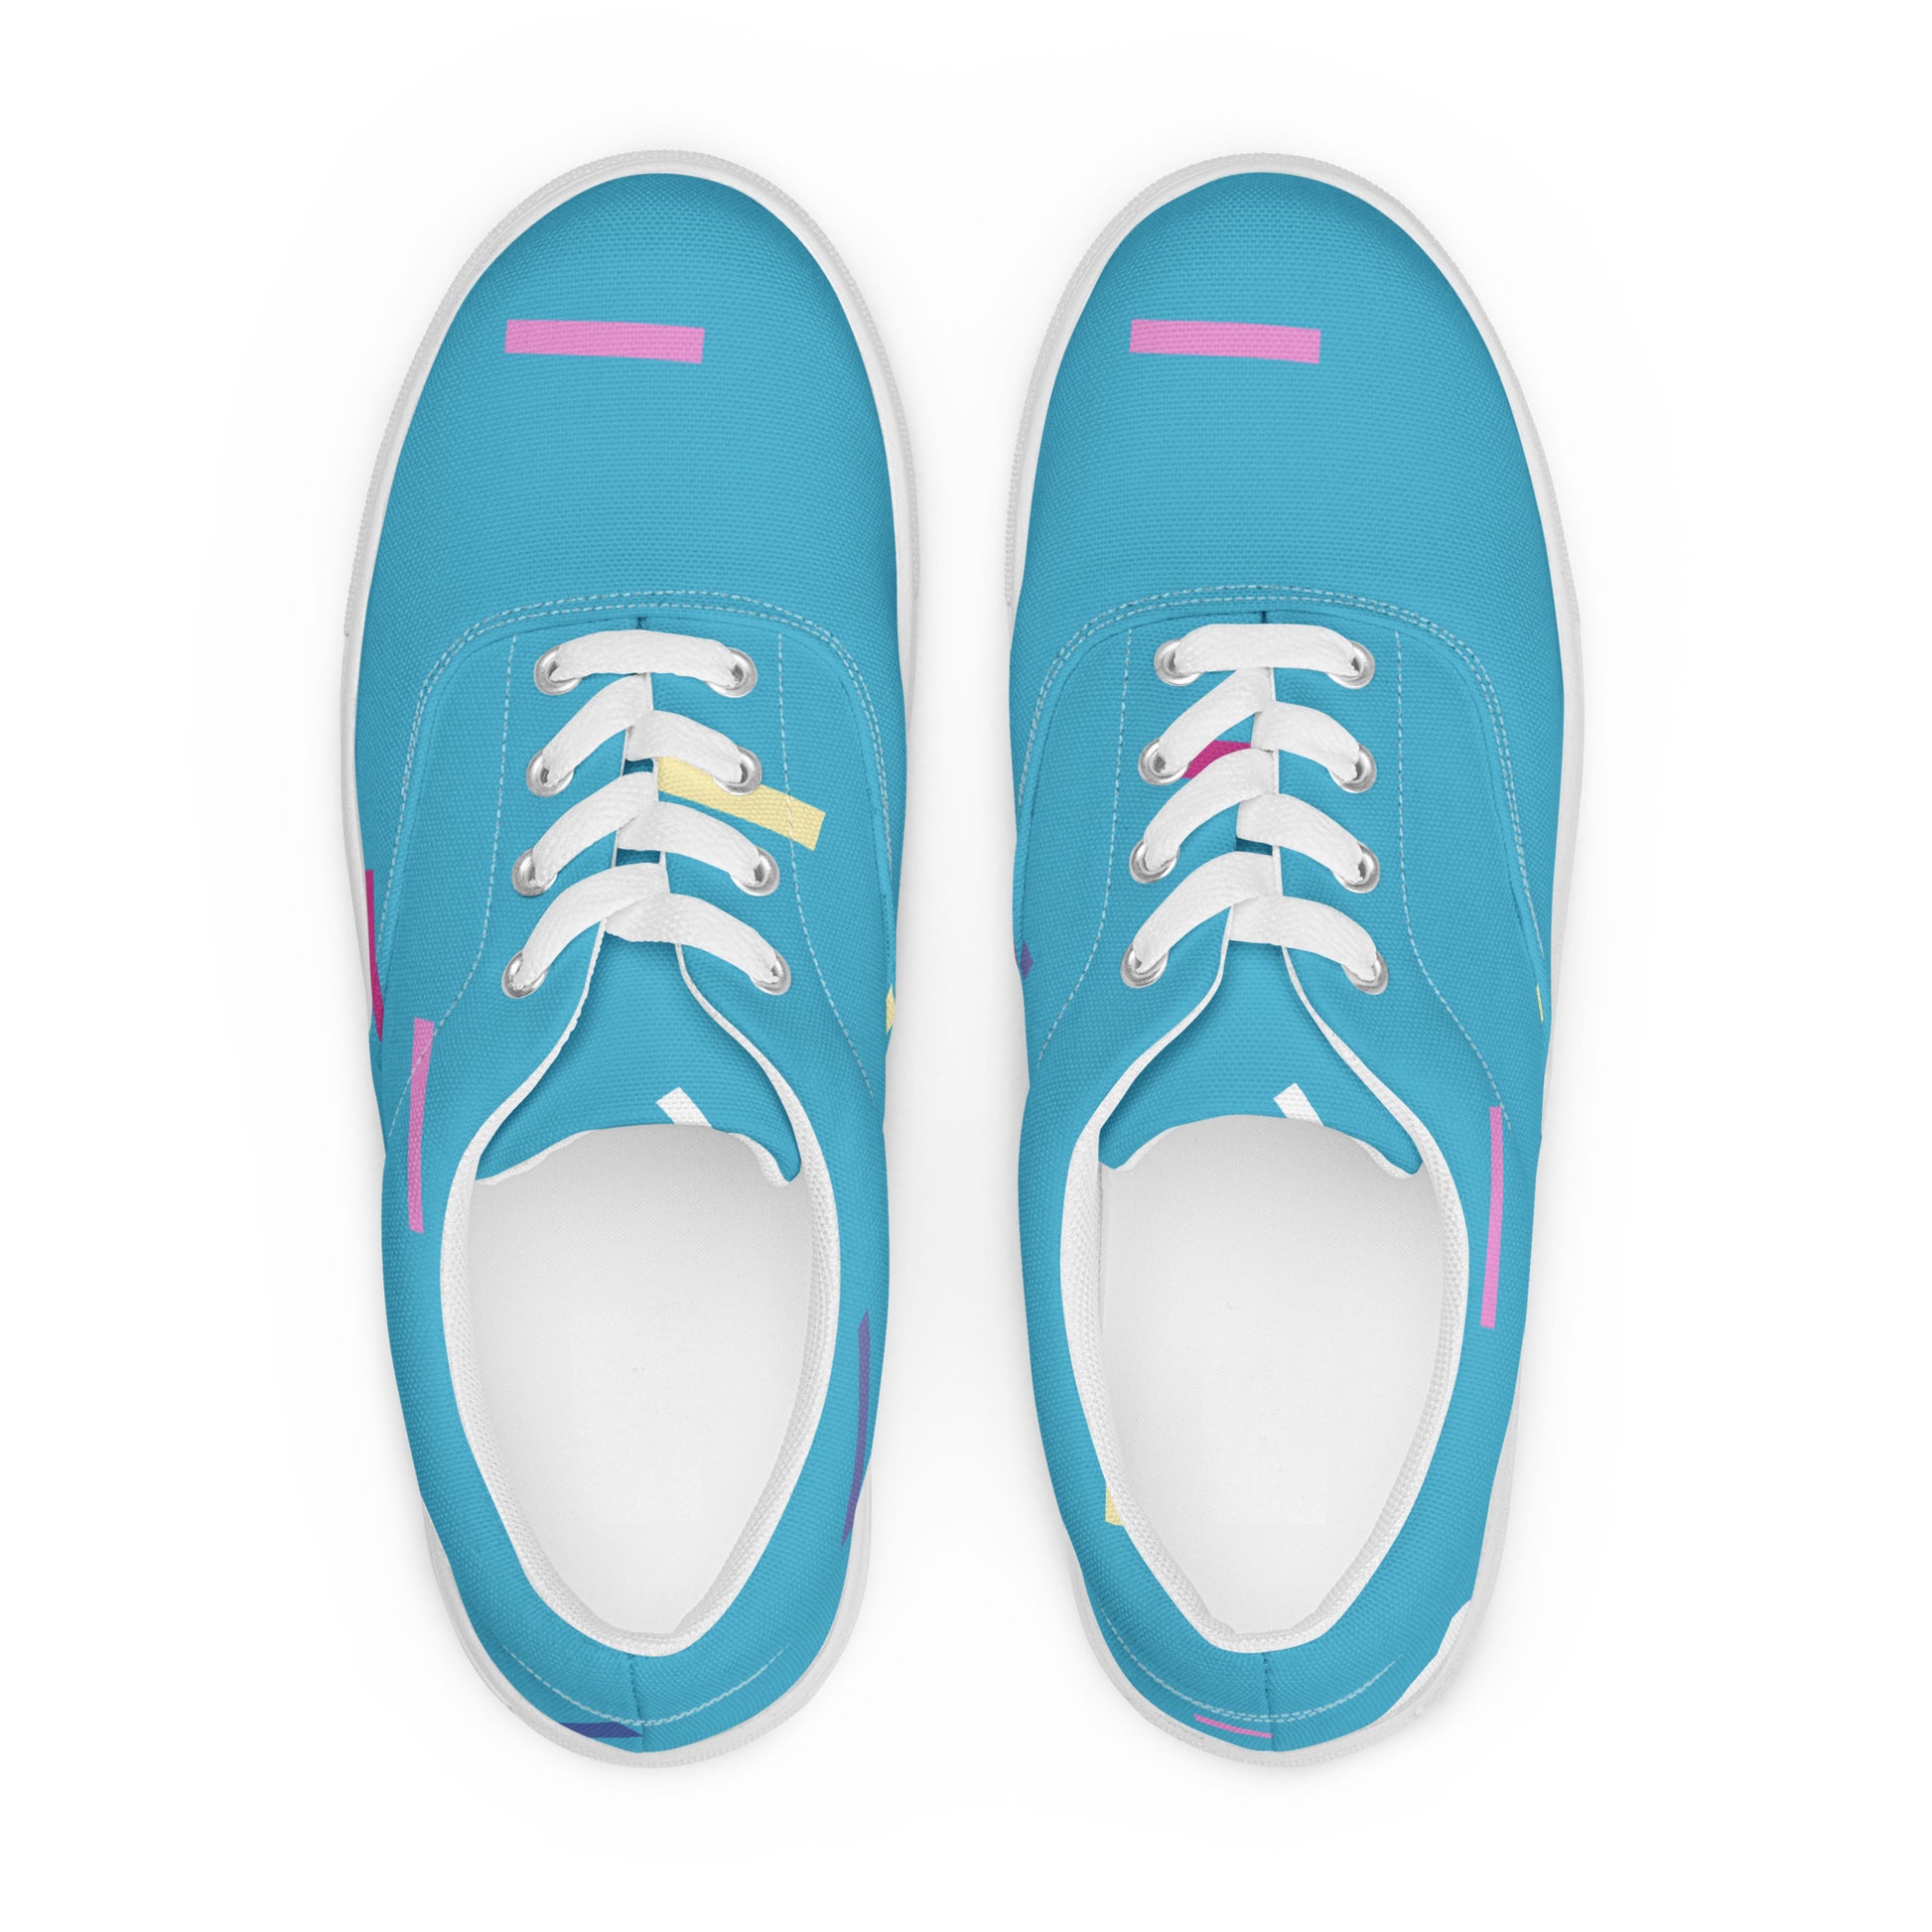 Confetti Men’s lace-up canvas shoes - Kickstart Fragrances